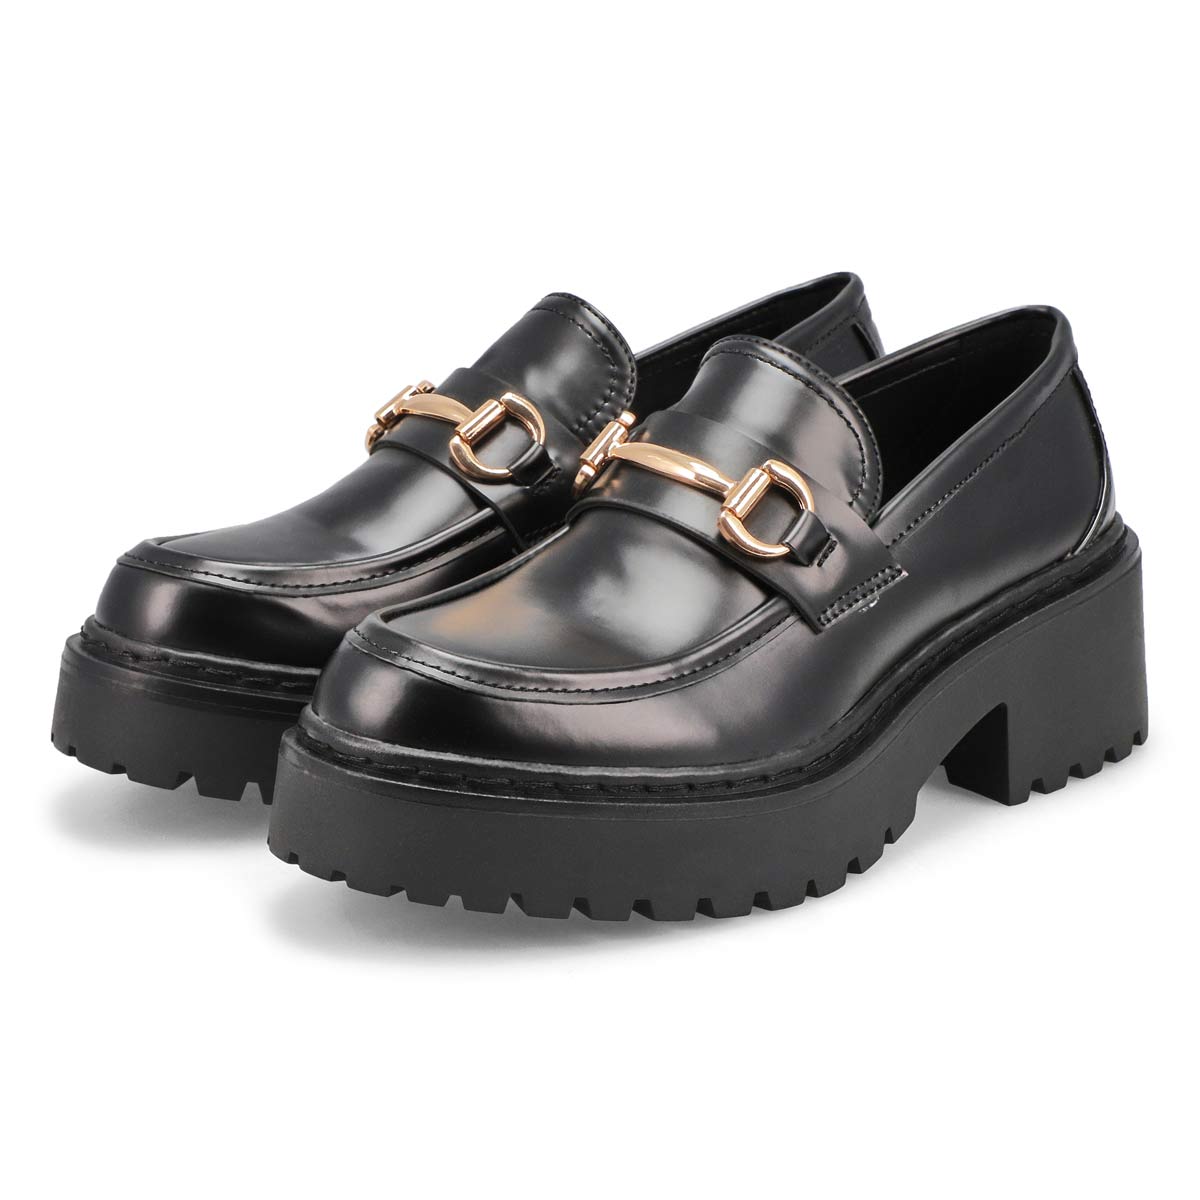 Steve Madden Women's Kalon Loafer, Black Leather, 7.5 : Buy Online